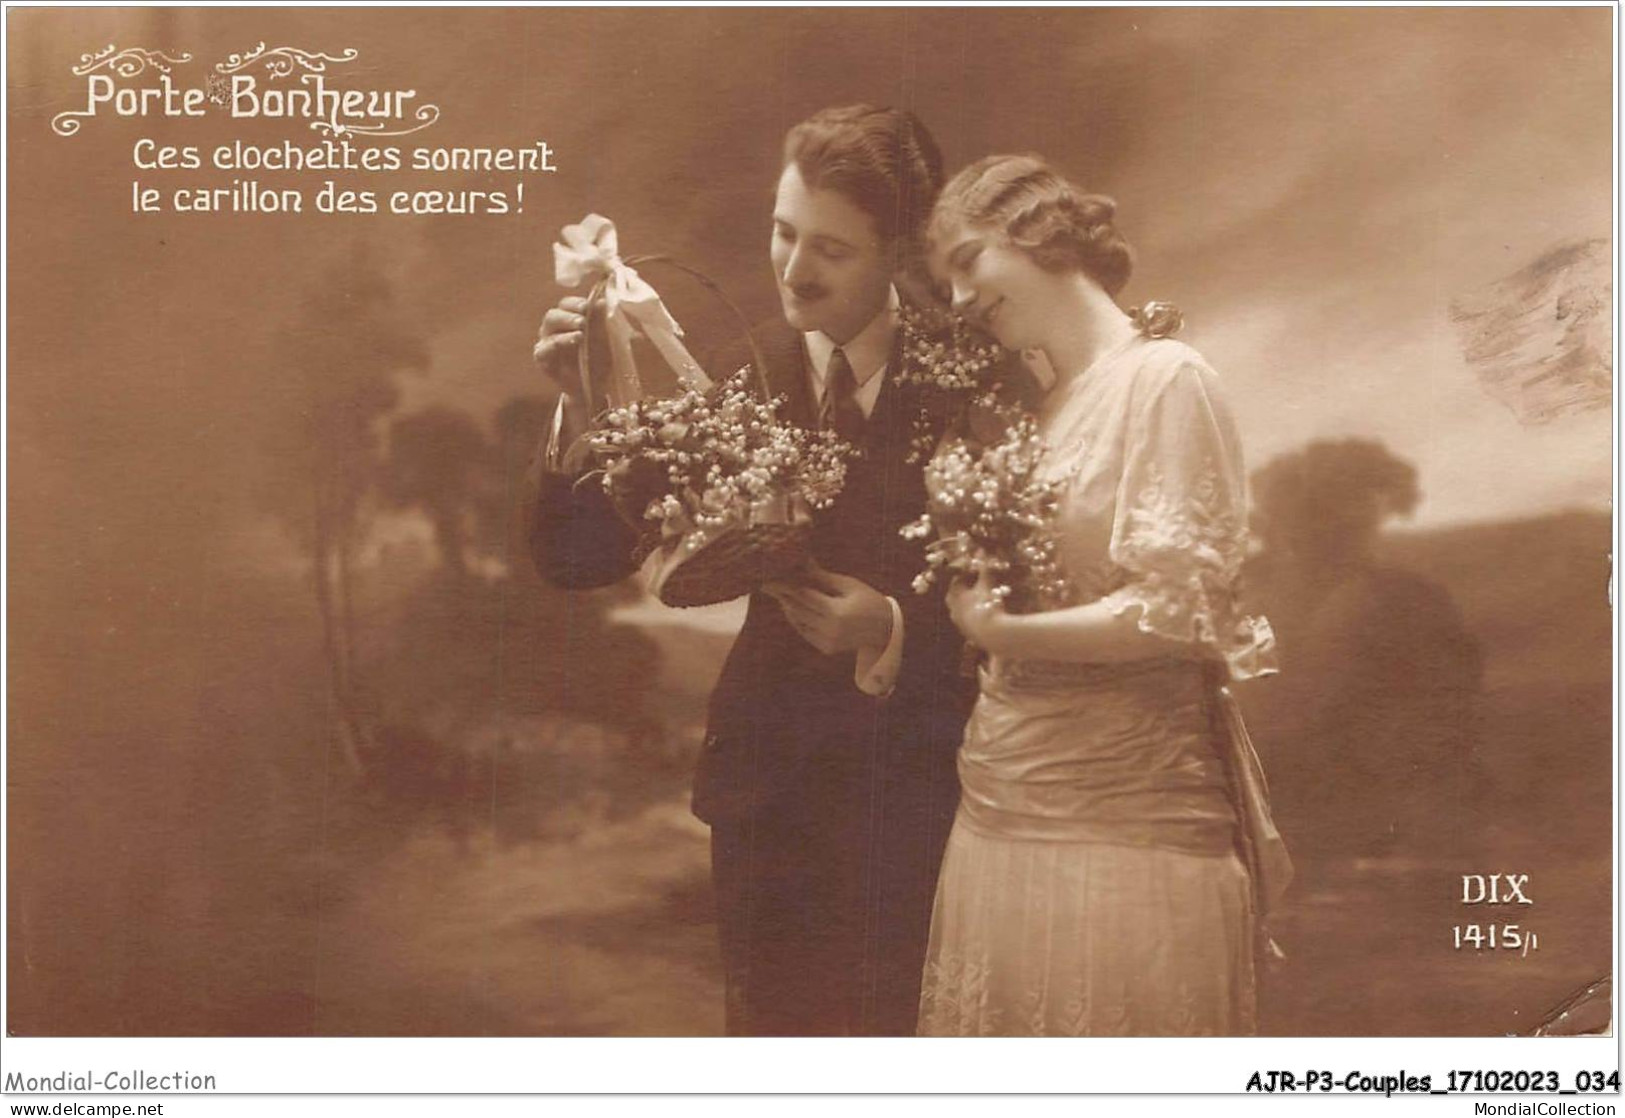 AJRP3-0226 - COUPLES - PORTE BONHEUR CES CLOCHETTES SONNENT LE CARILLON DES COEURS  - Couples